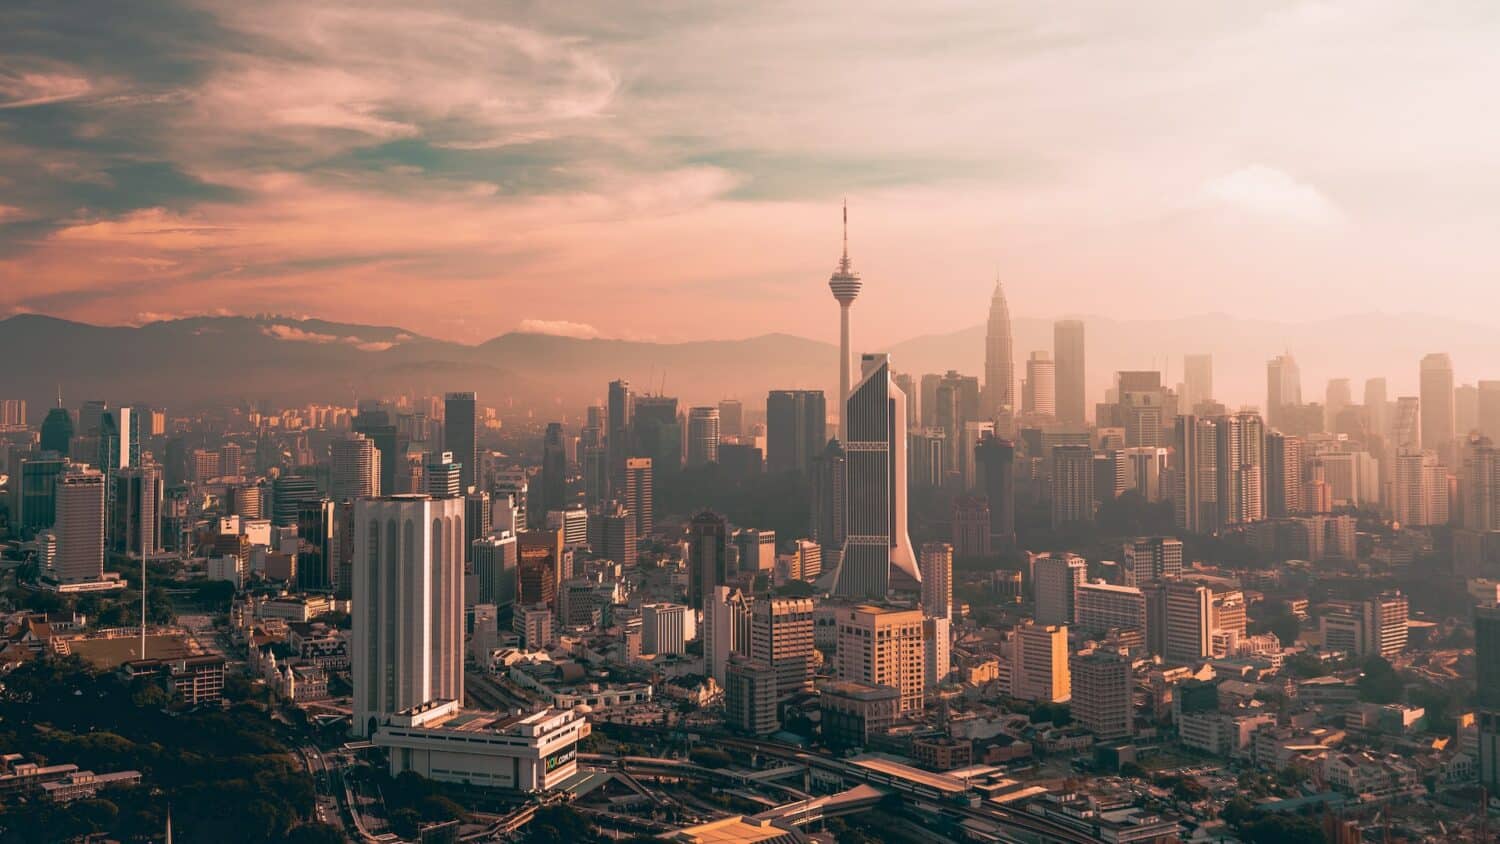 Centro de Kuala Lumpur visto de cima com prédios e arranha-céus modernos, estradas pavimentadas em um dia com céu nublado e alaranjado.